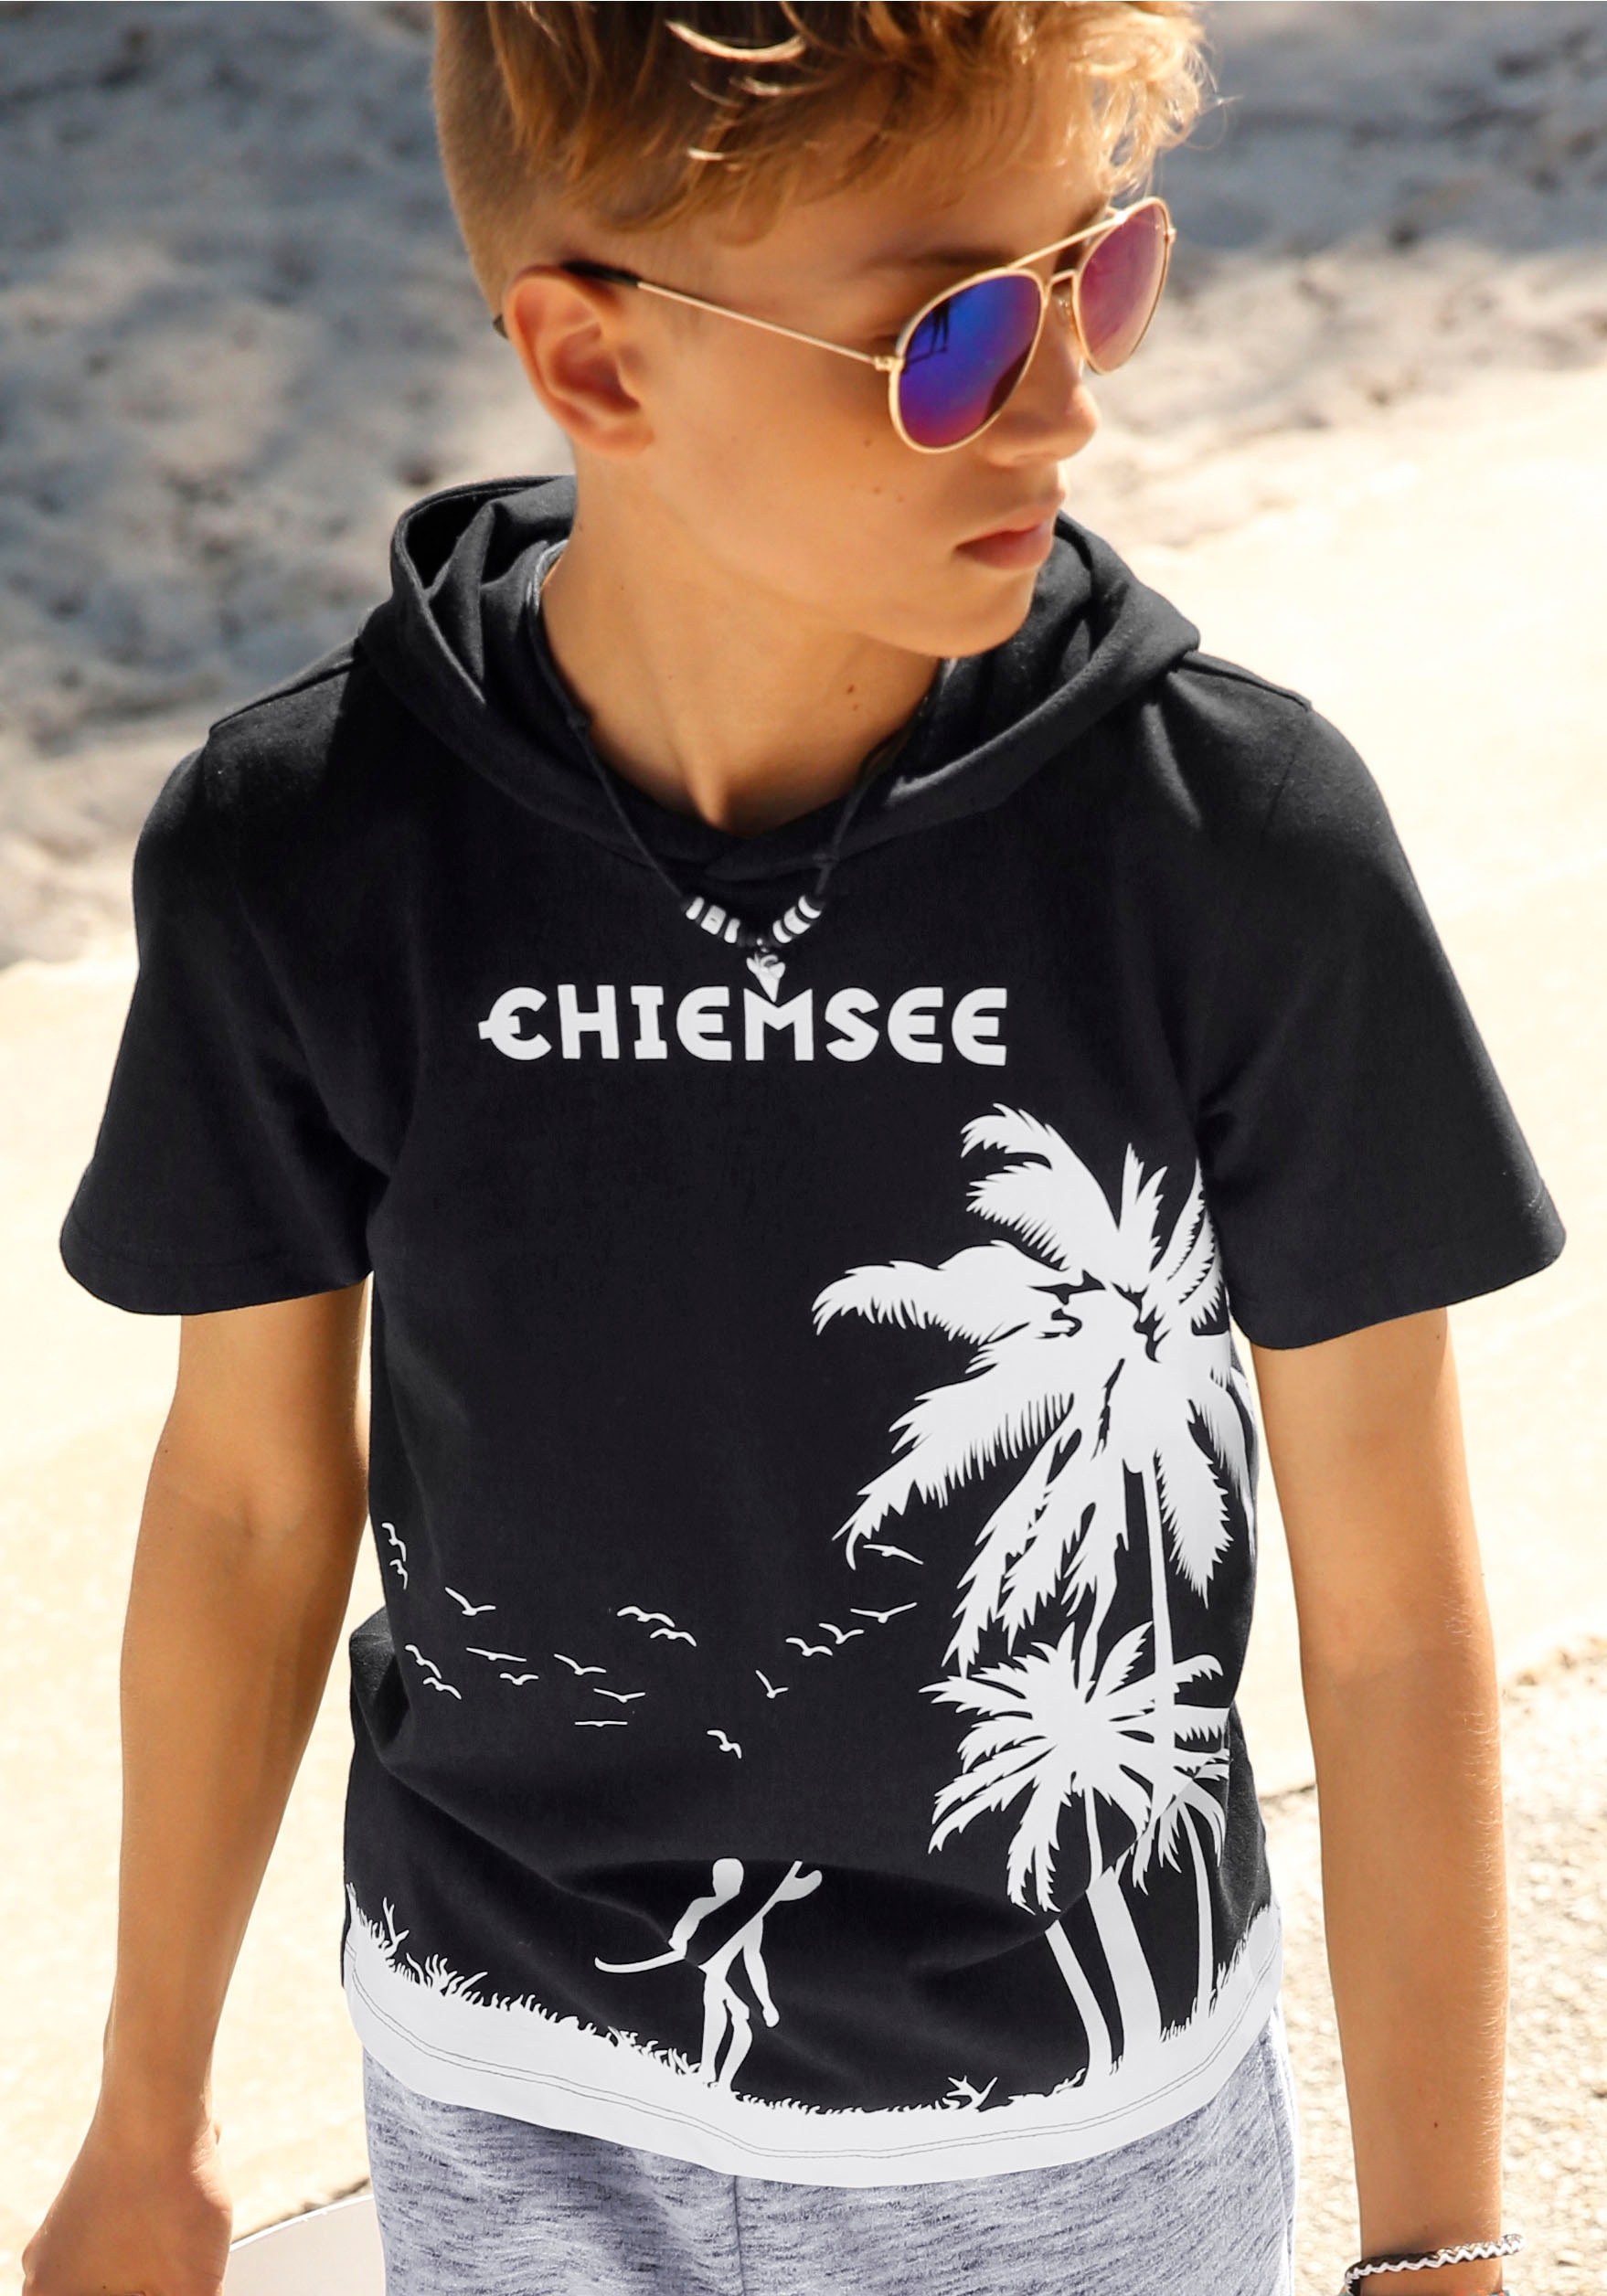 Günstig online einkaufen Chiemsee T-Shirt online »mit Palmendruck« bestellen